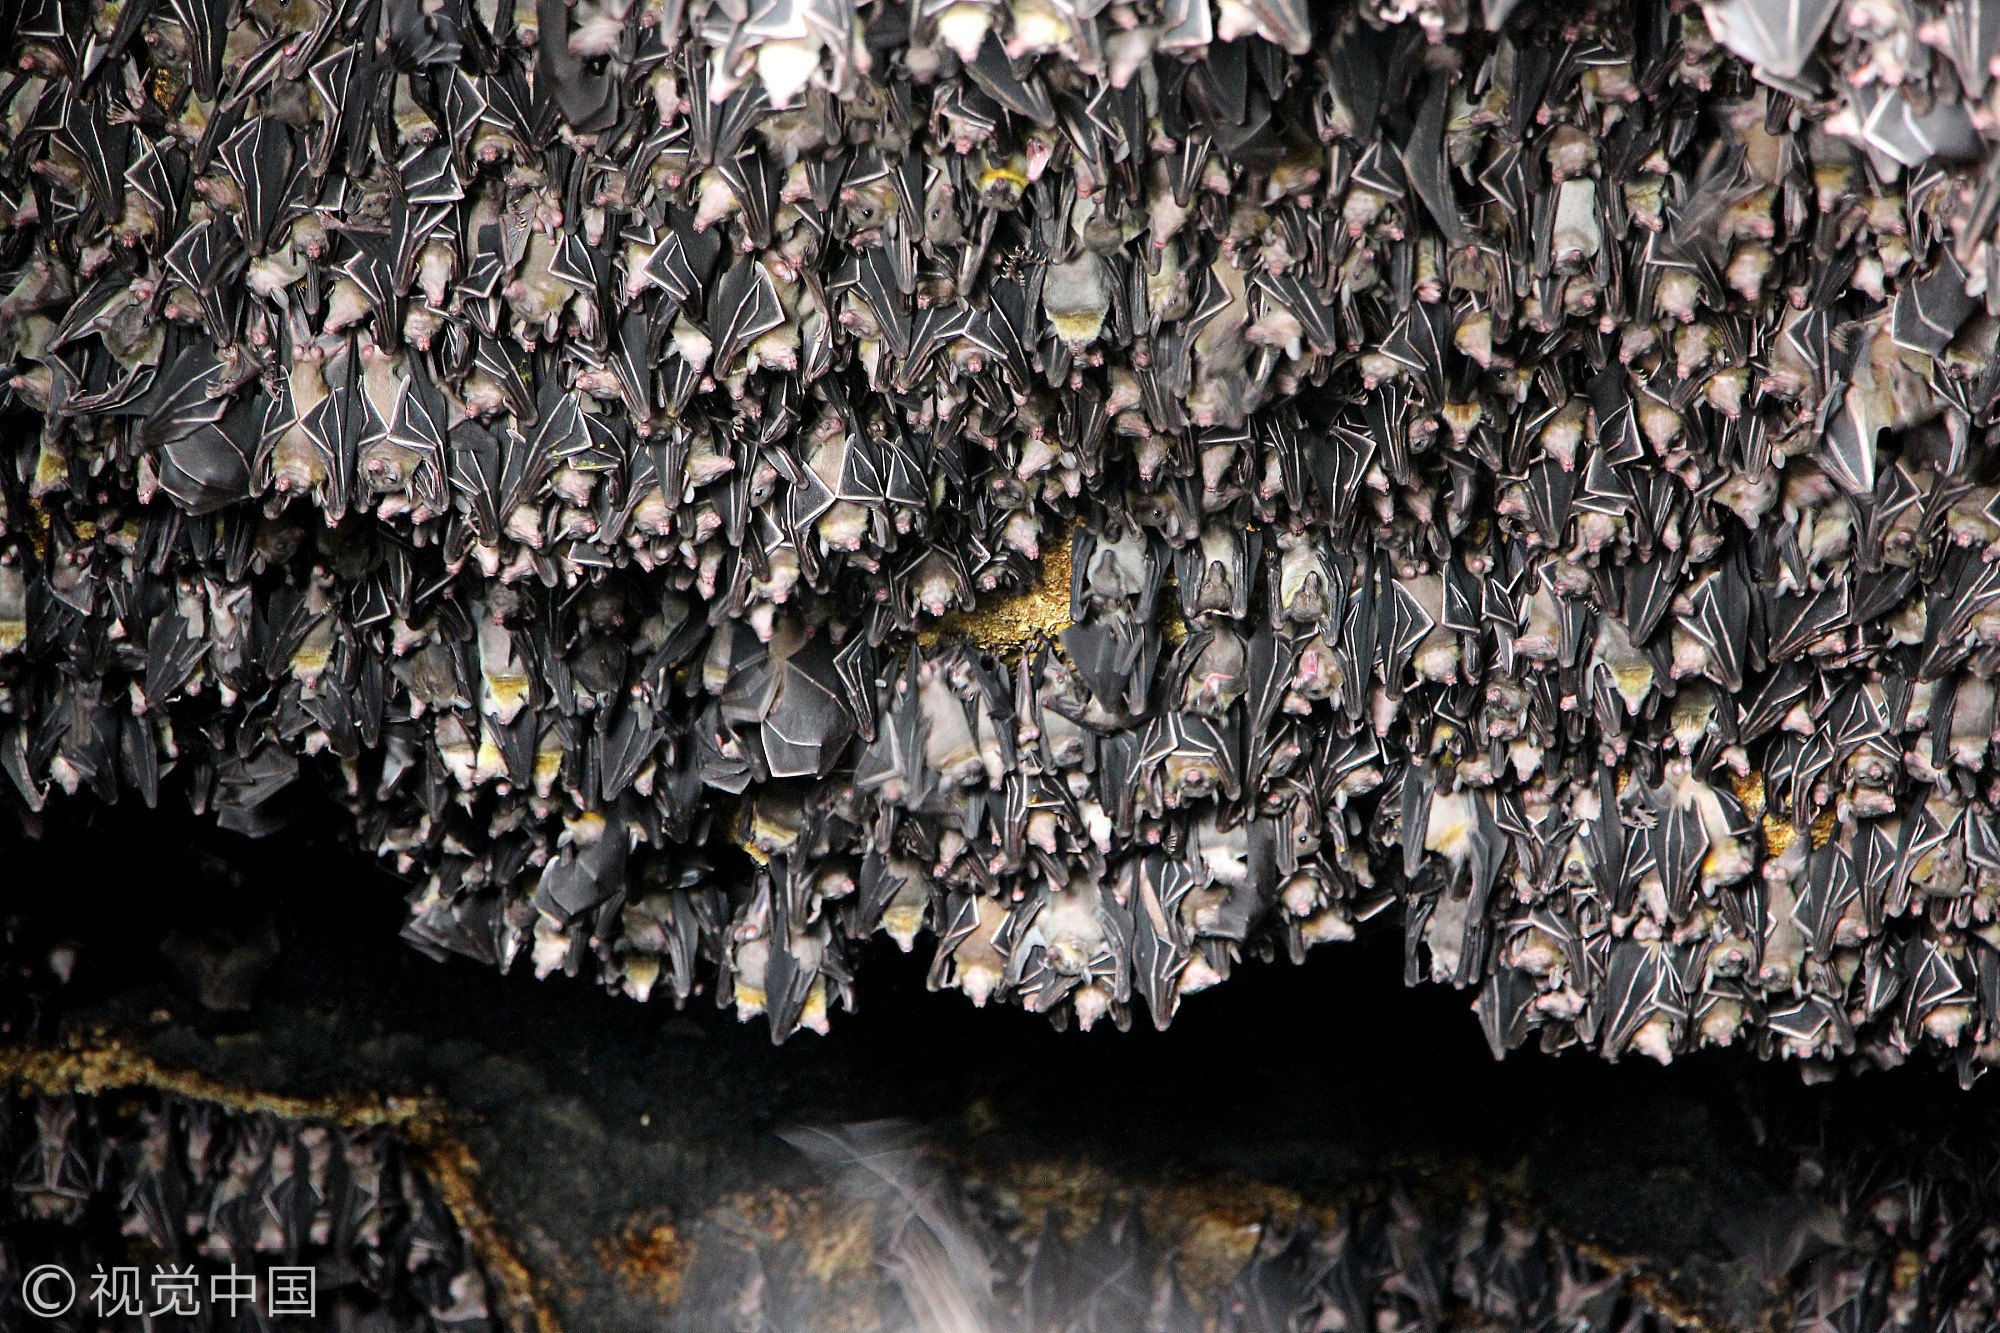 2006年,蒙特福特洞因居住有180万只蝙蝠而入选吉尼斯世界记录,但现